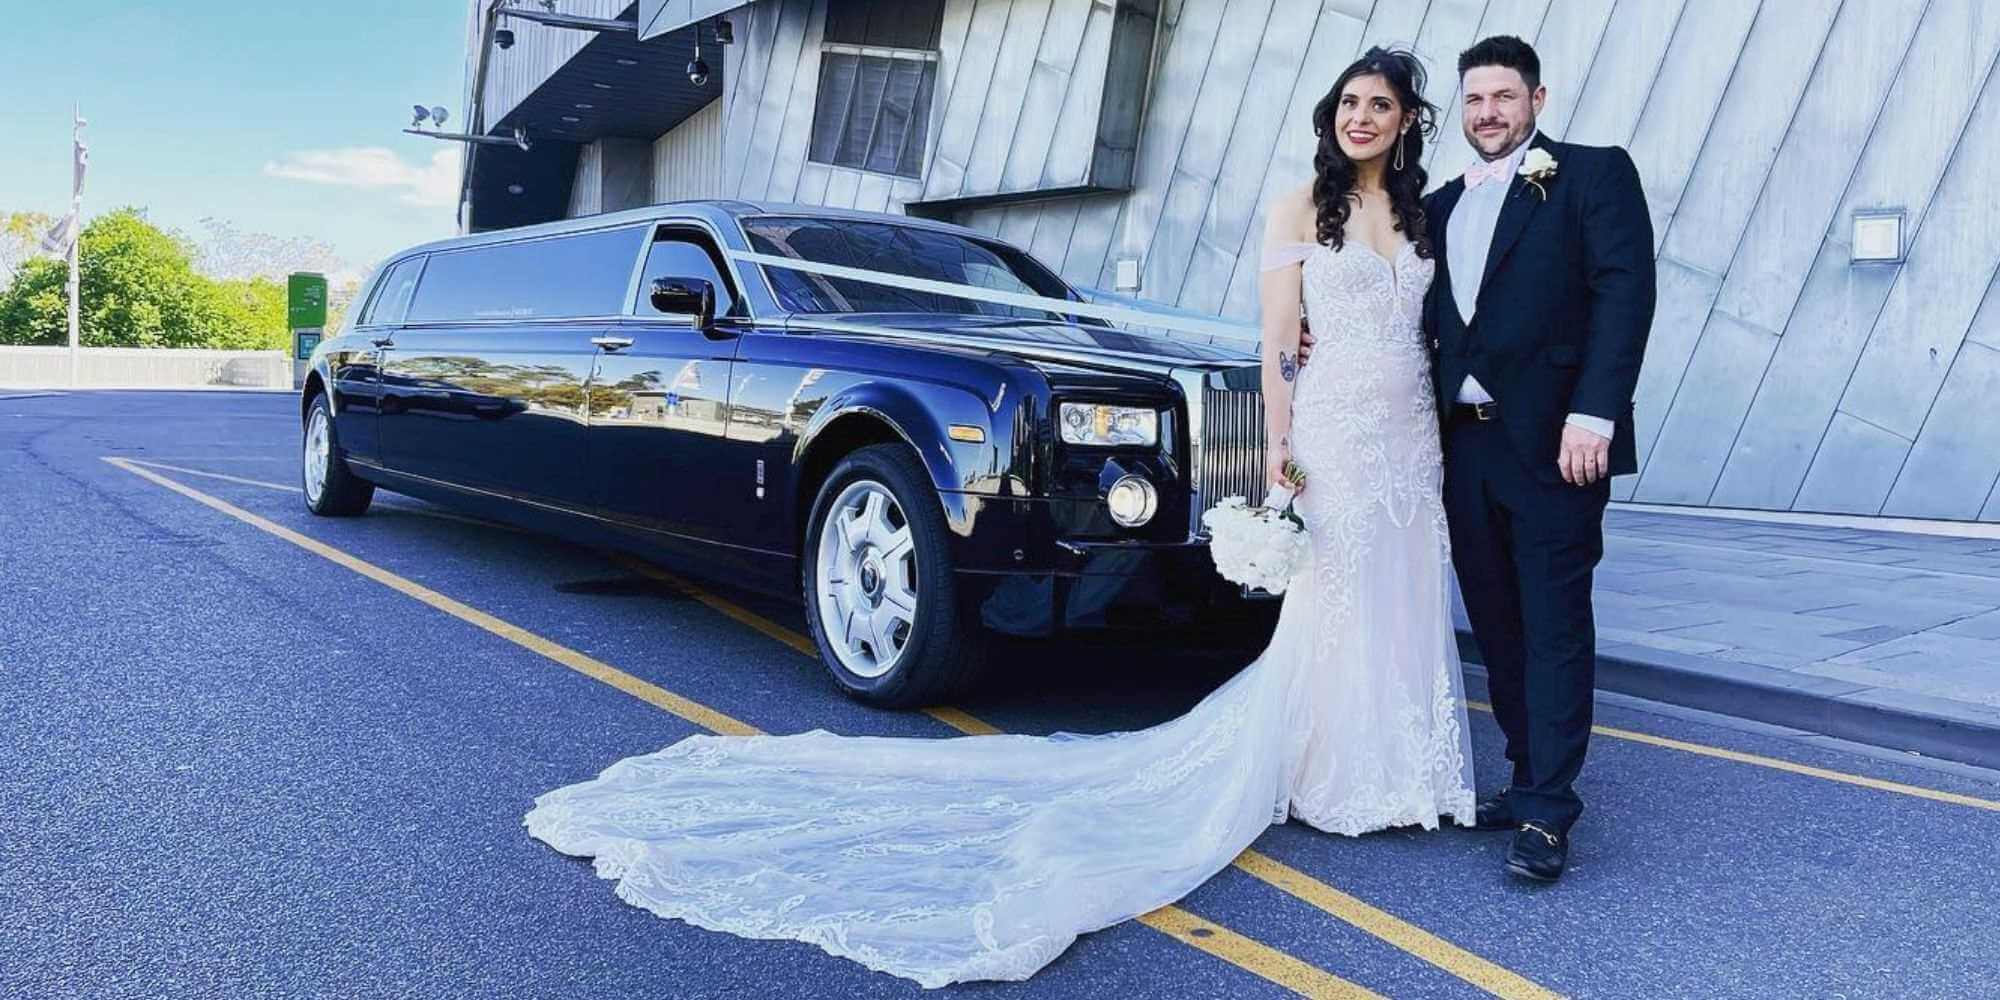 Rolls Royce Limousines Melbourne - Limousine for Wedding Car Hire